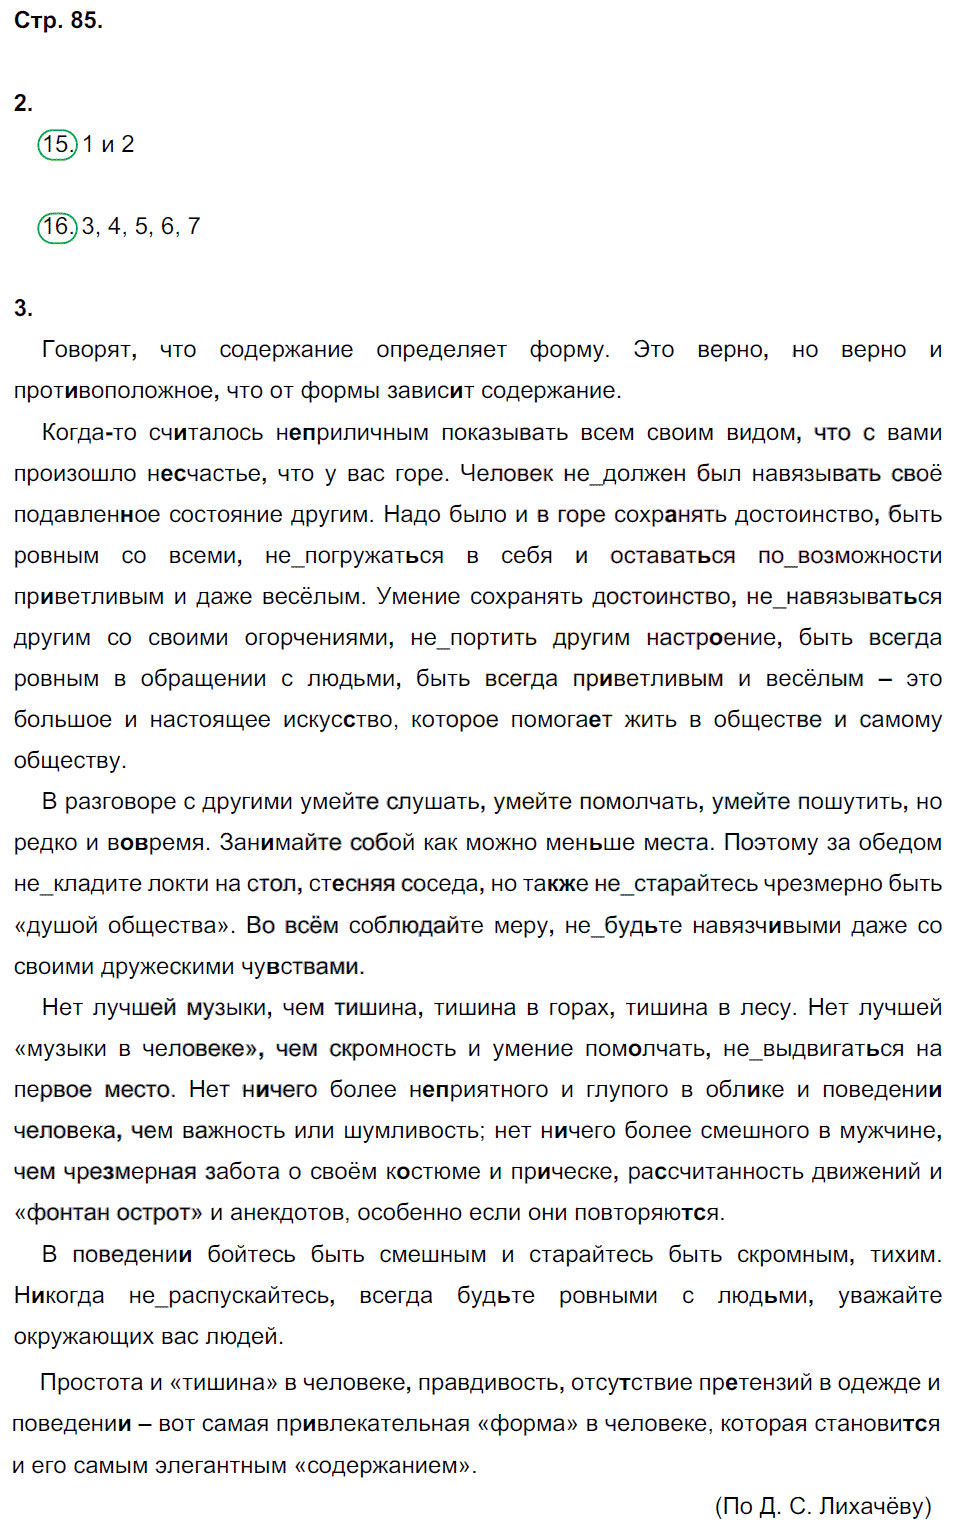 гдз 8 класс рабочая тетрадь страница 85 русский язык Ерохина